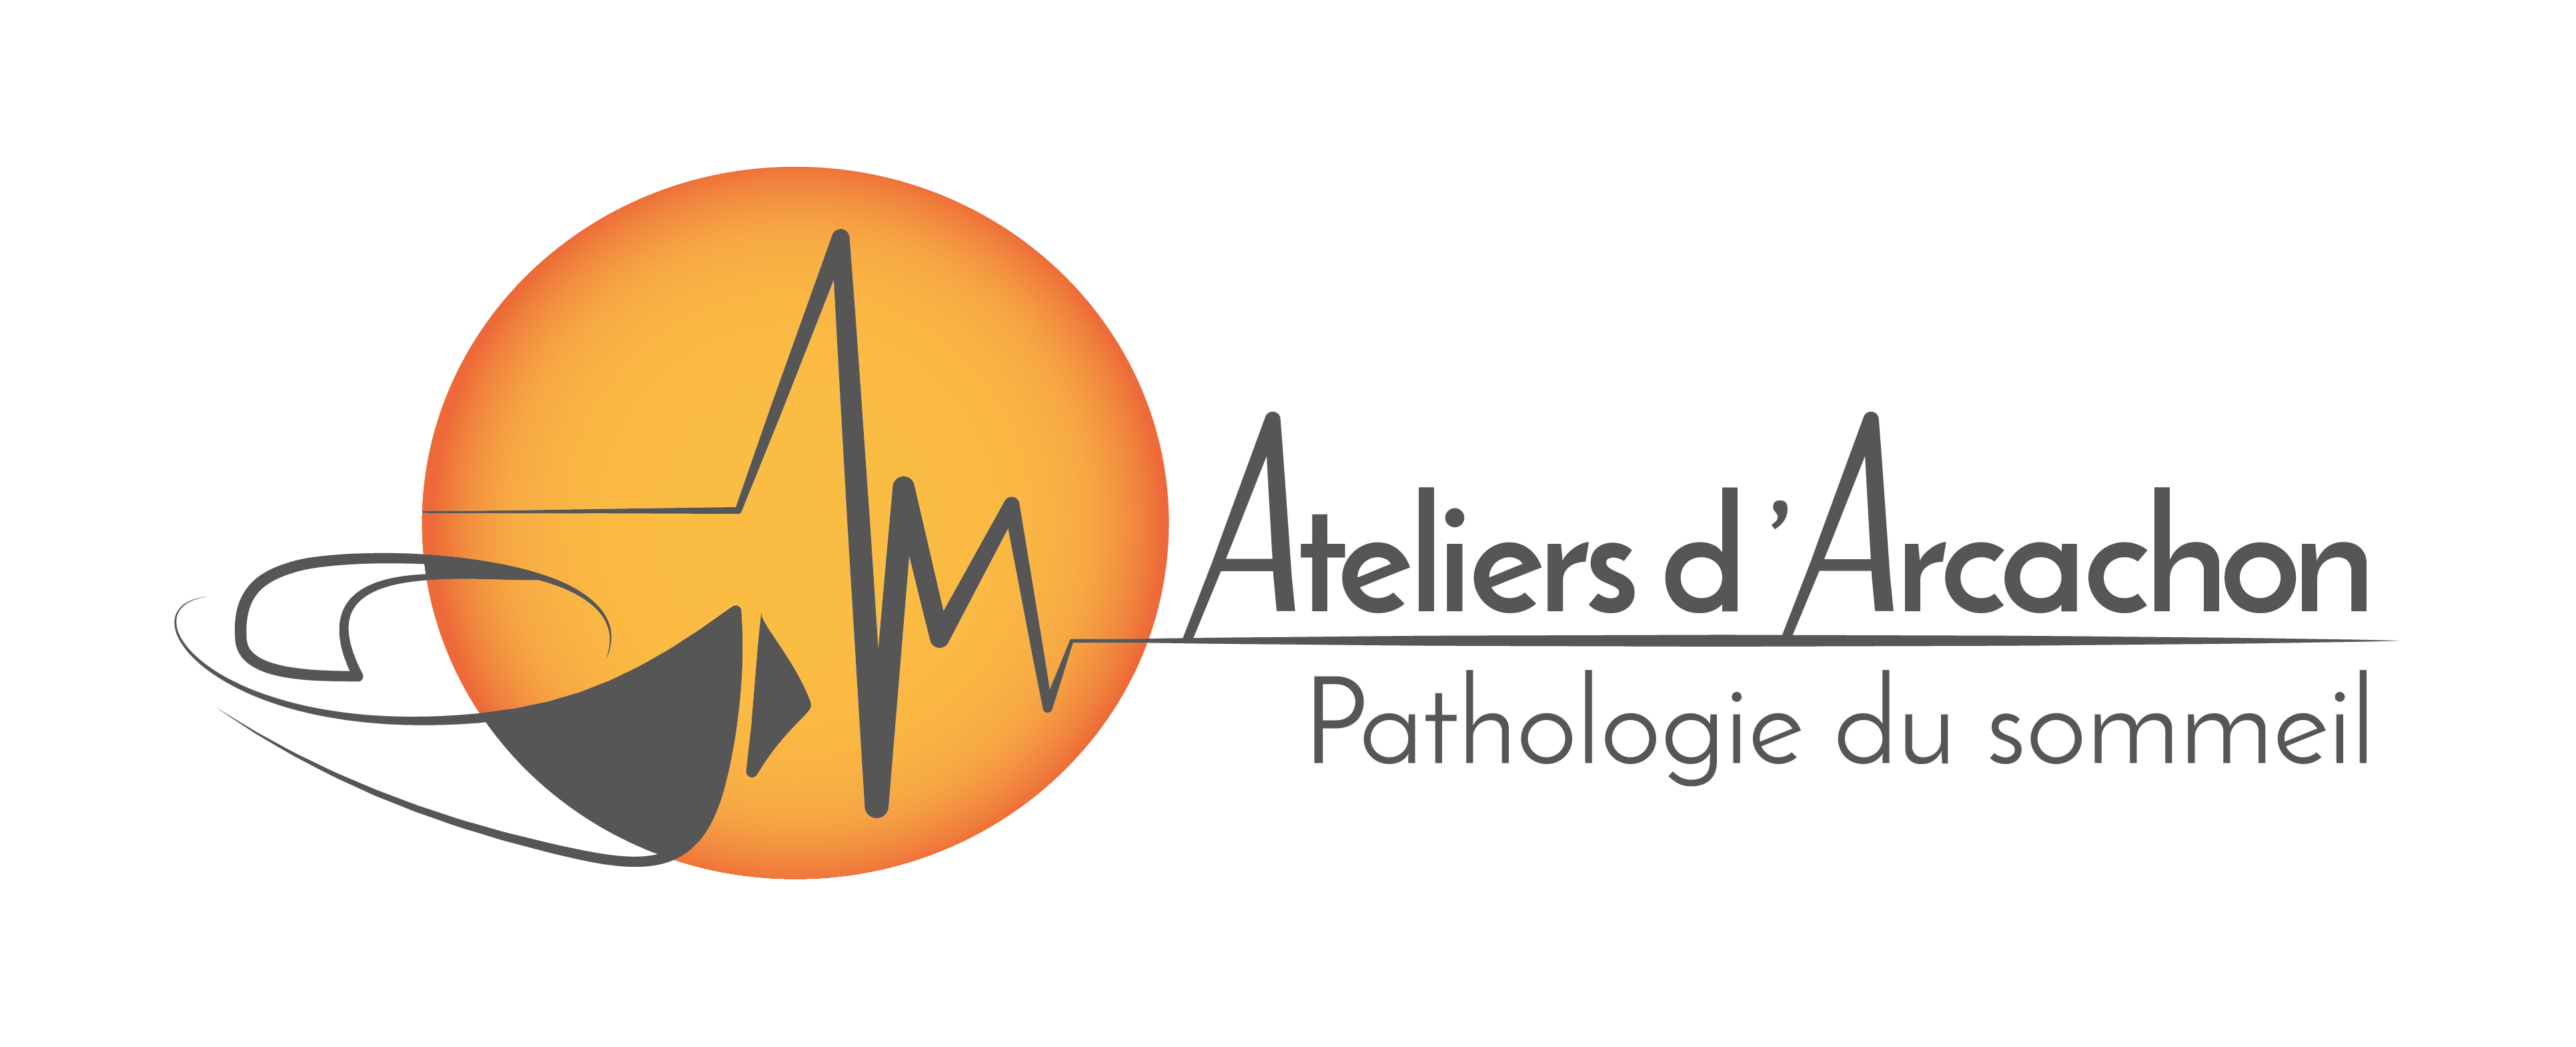 ateliers-arcachon-pathologies-sommeil-logo